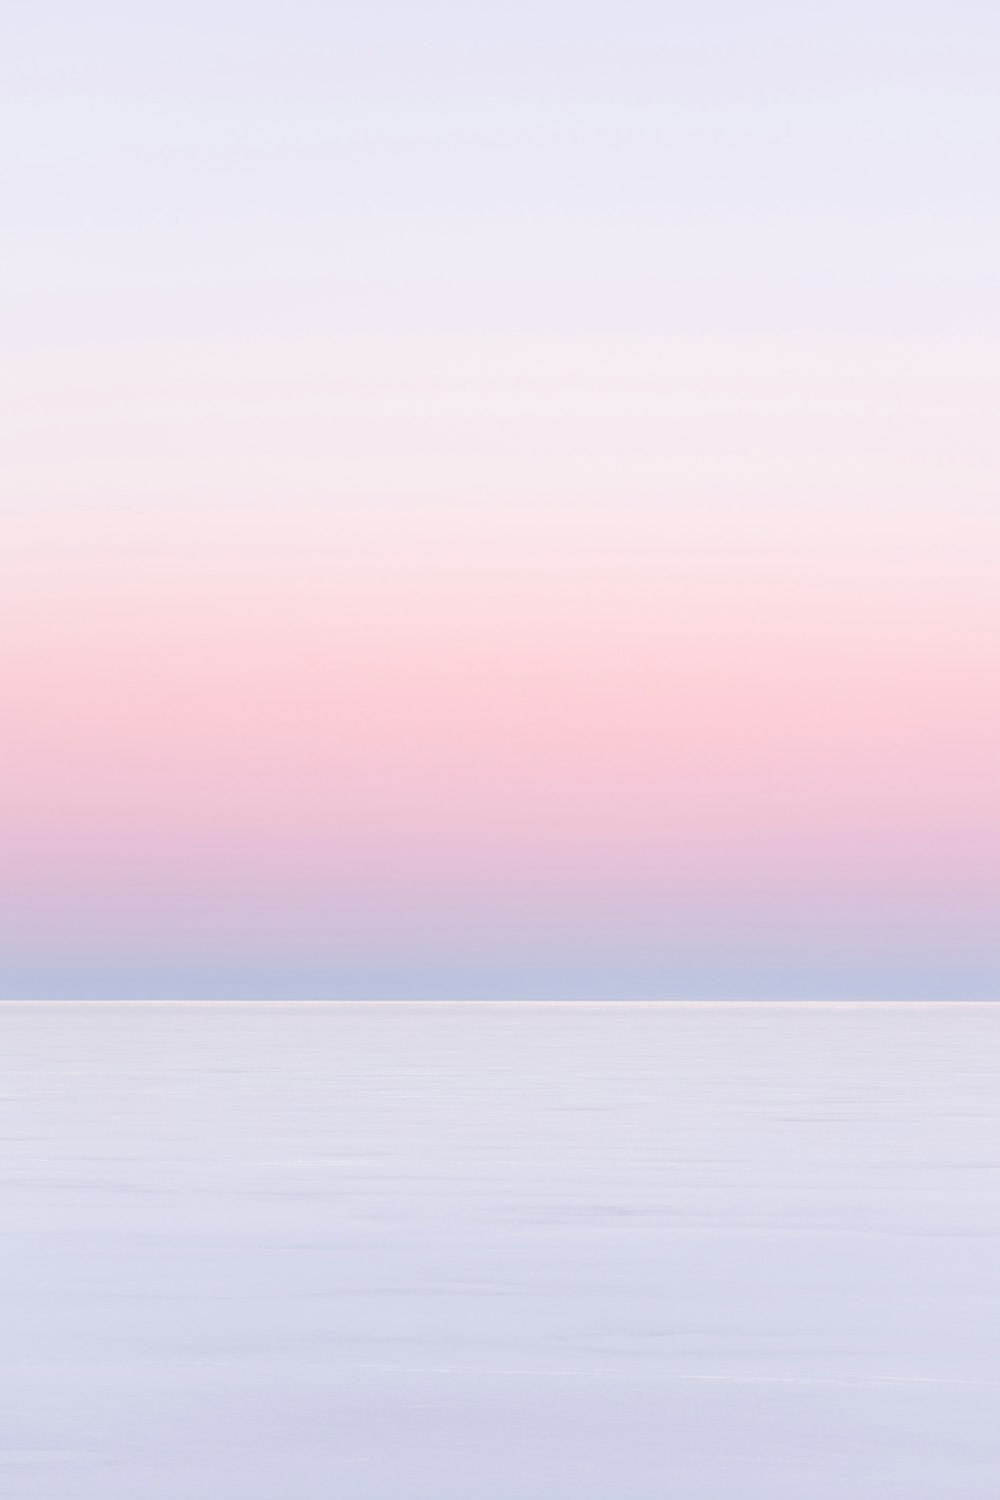 cielo bianco e rosa sul mare